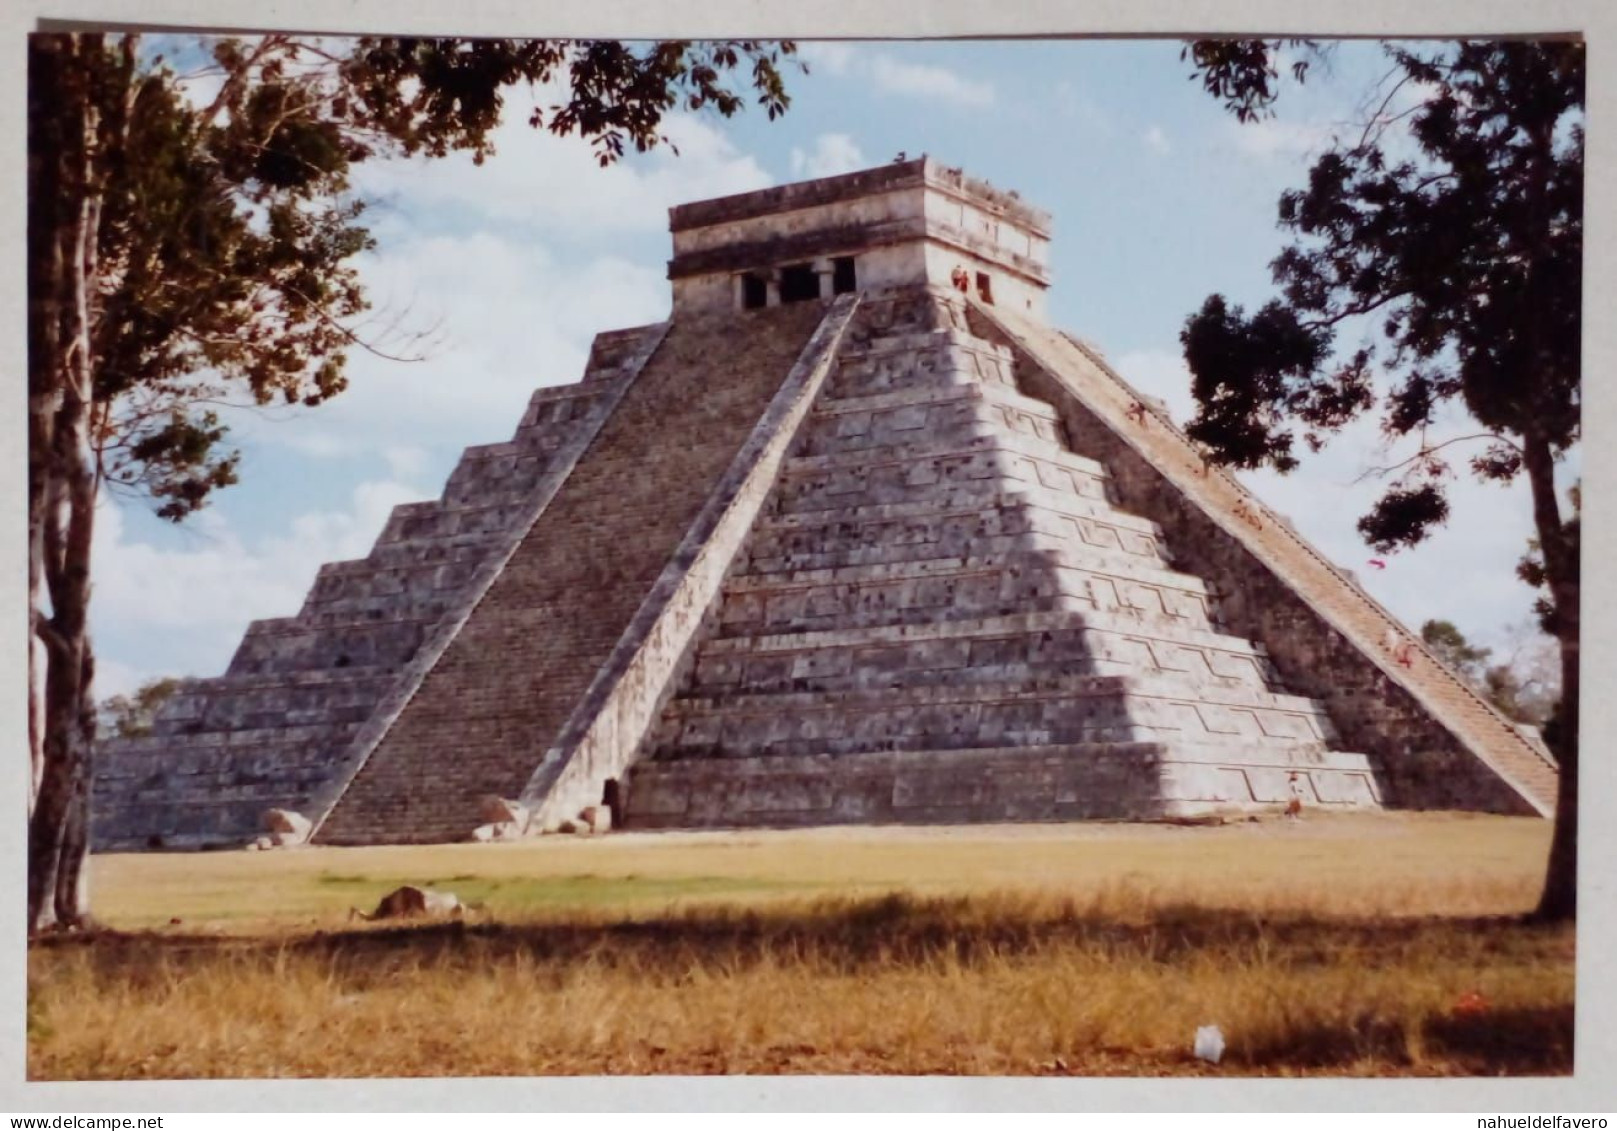 PH - Chichen Itzá, Mexique. - Lieux